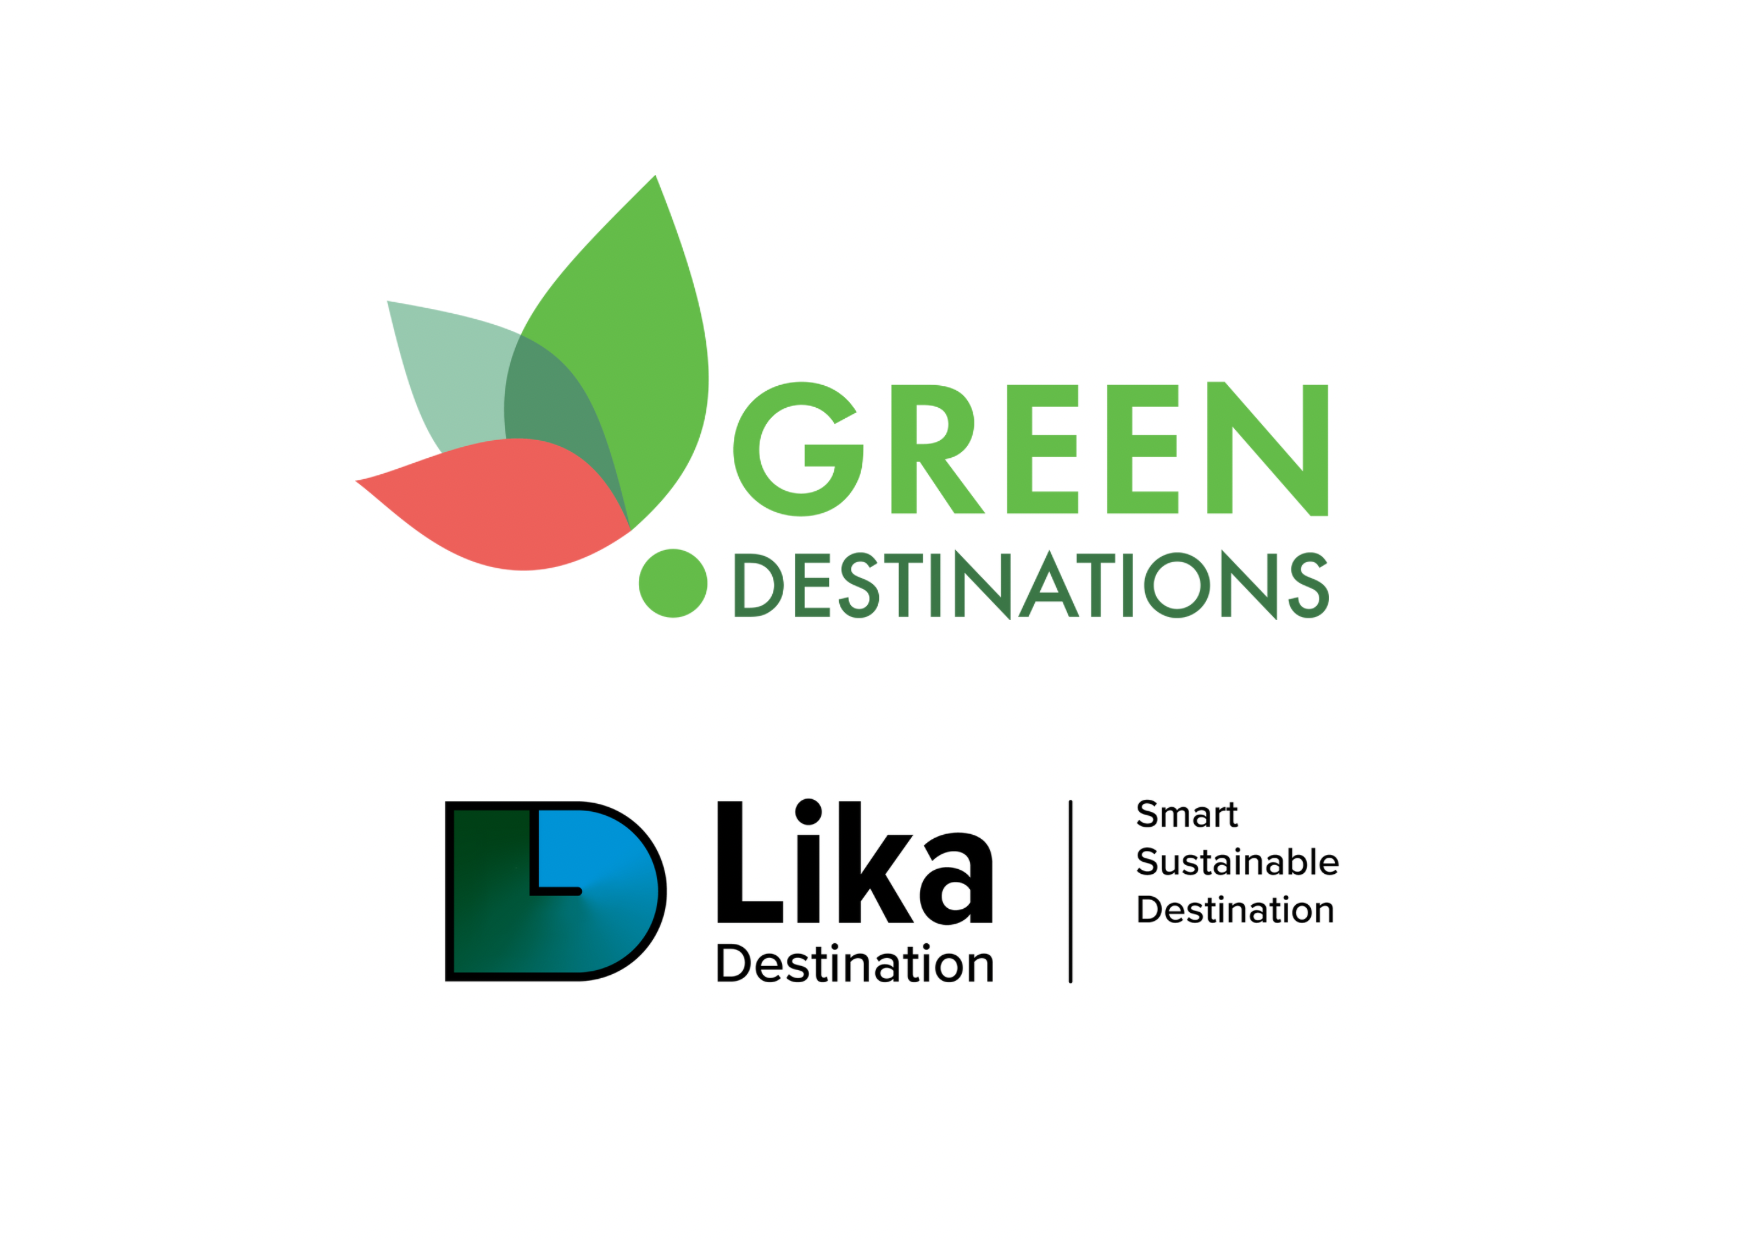 Lika destination green destinations 1